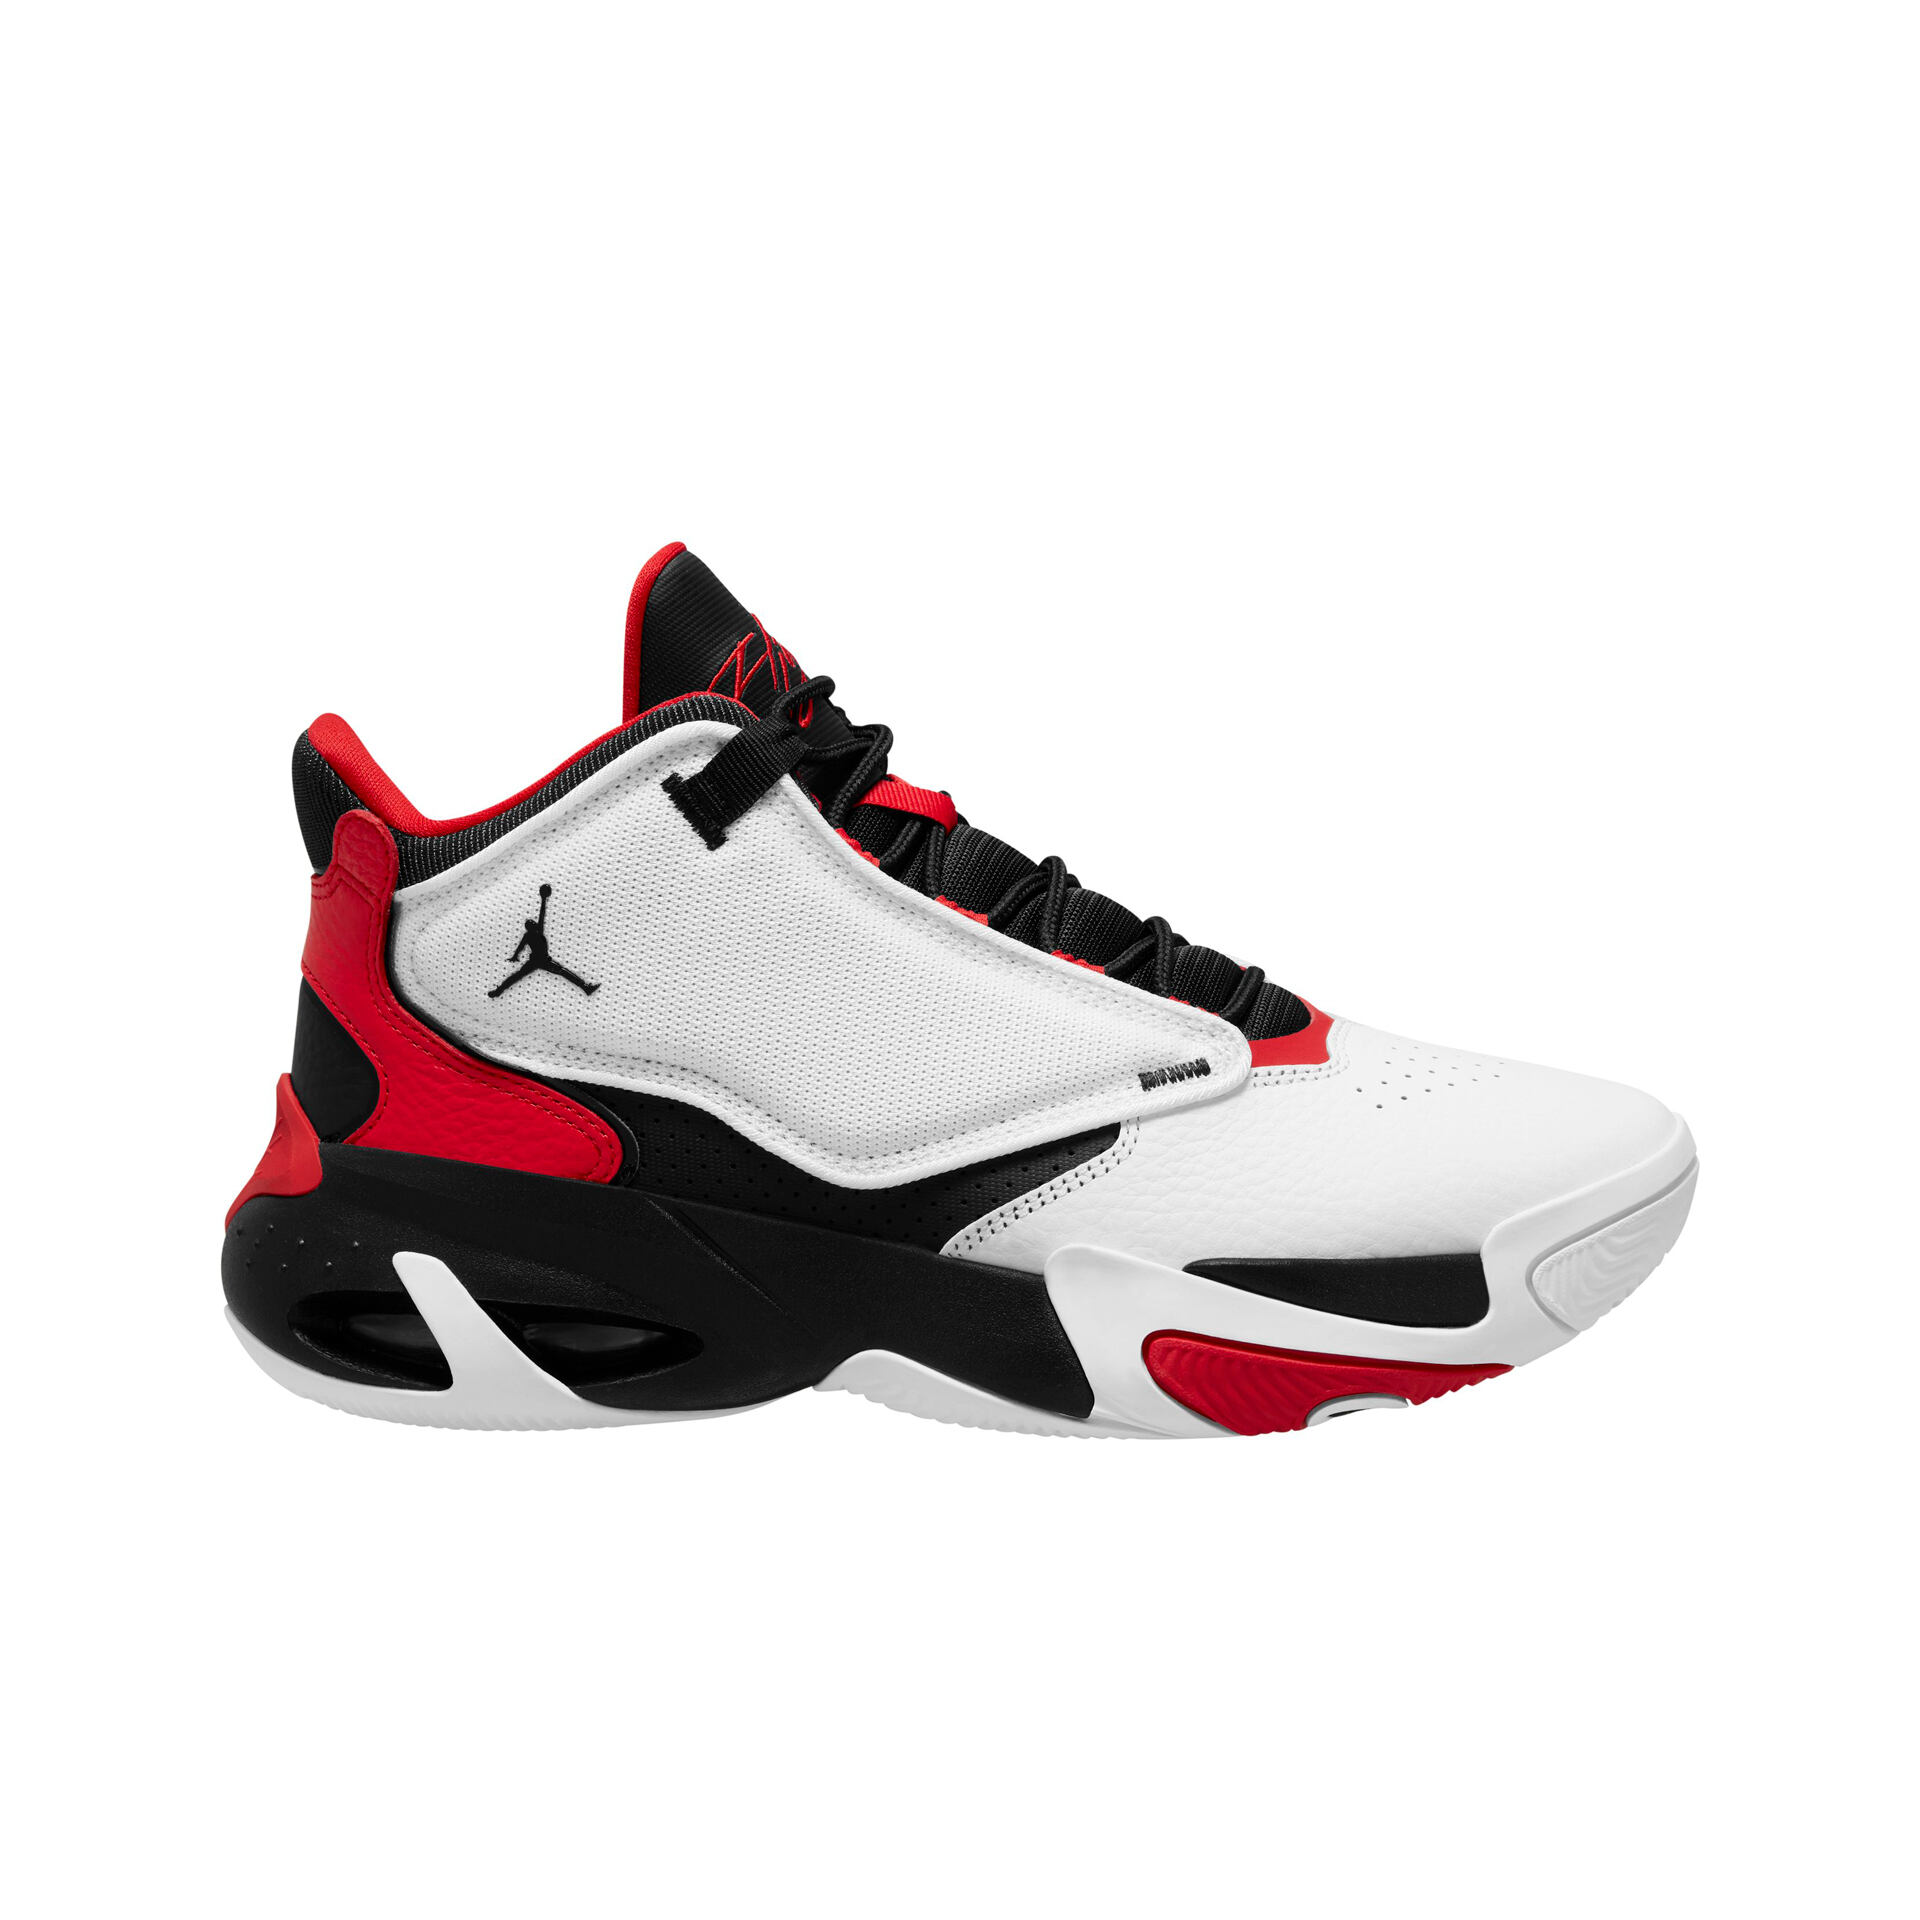 Zapatillas Jordan Retro 4 Blancas Hombre Nike